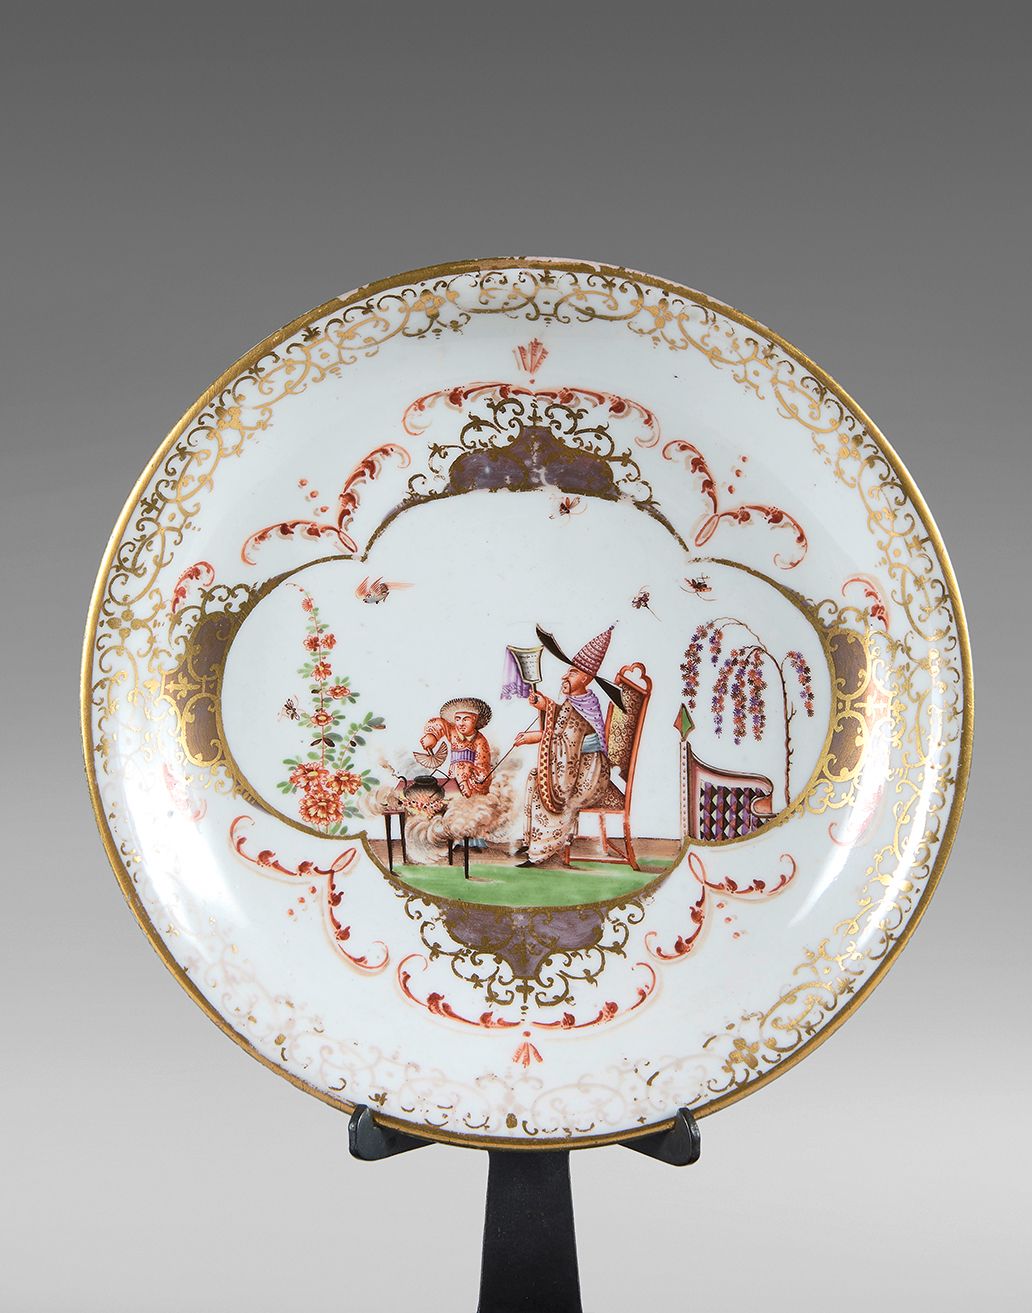 MEISSEN 一个圆瓷碗，有多色和金色的装饰，中央有两个中国人坐着，鸟和昆虫，边缘有叶子、花边和楣饰。
大约1725-1730年。
直径：17厘米